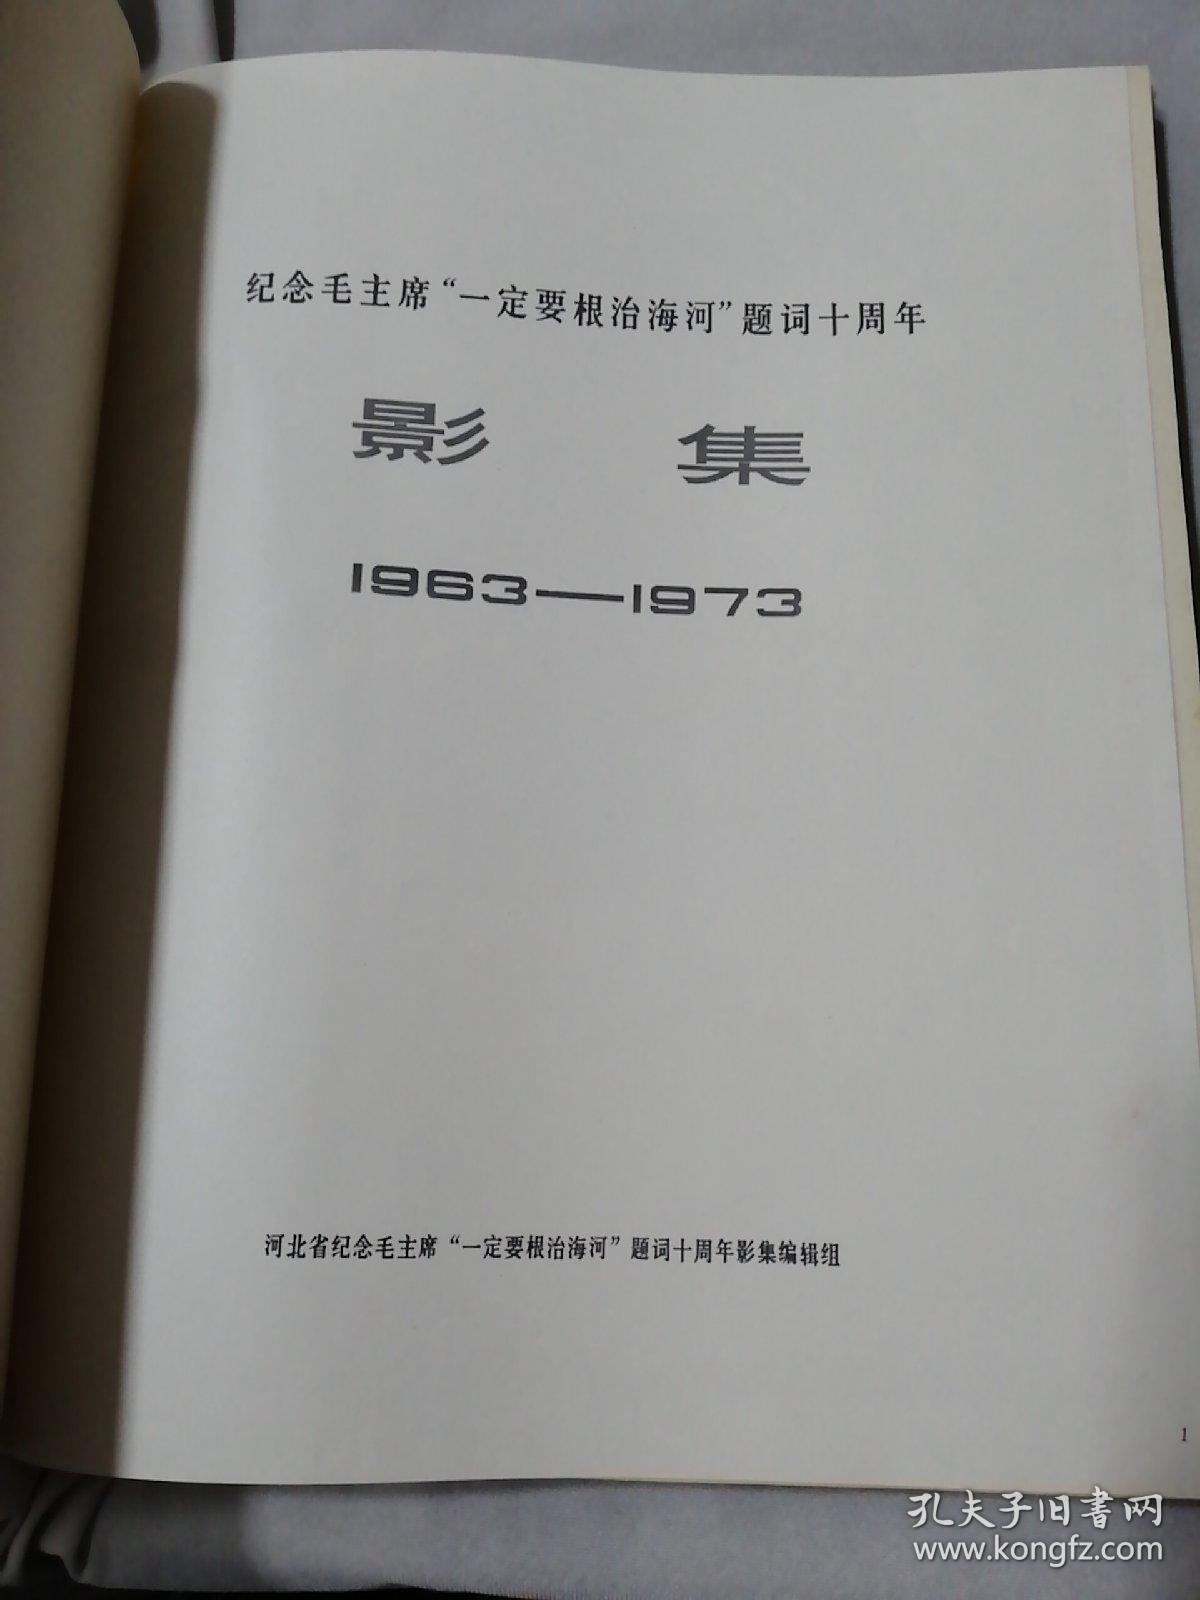 纪念毛主席“一定要根治海河”题词十周年影集 1963-1973